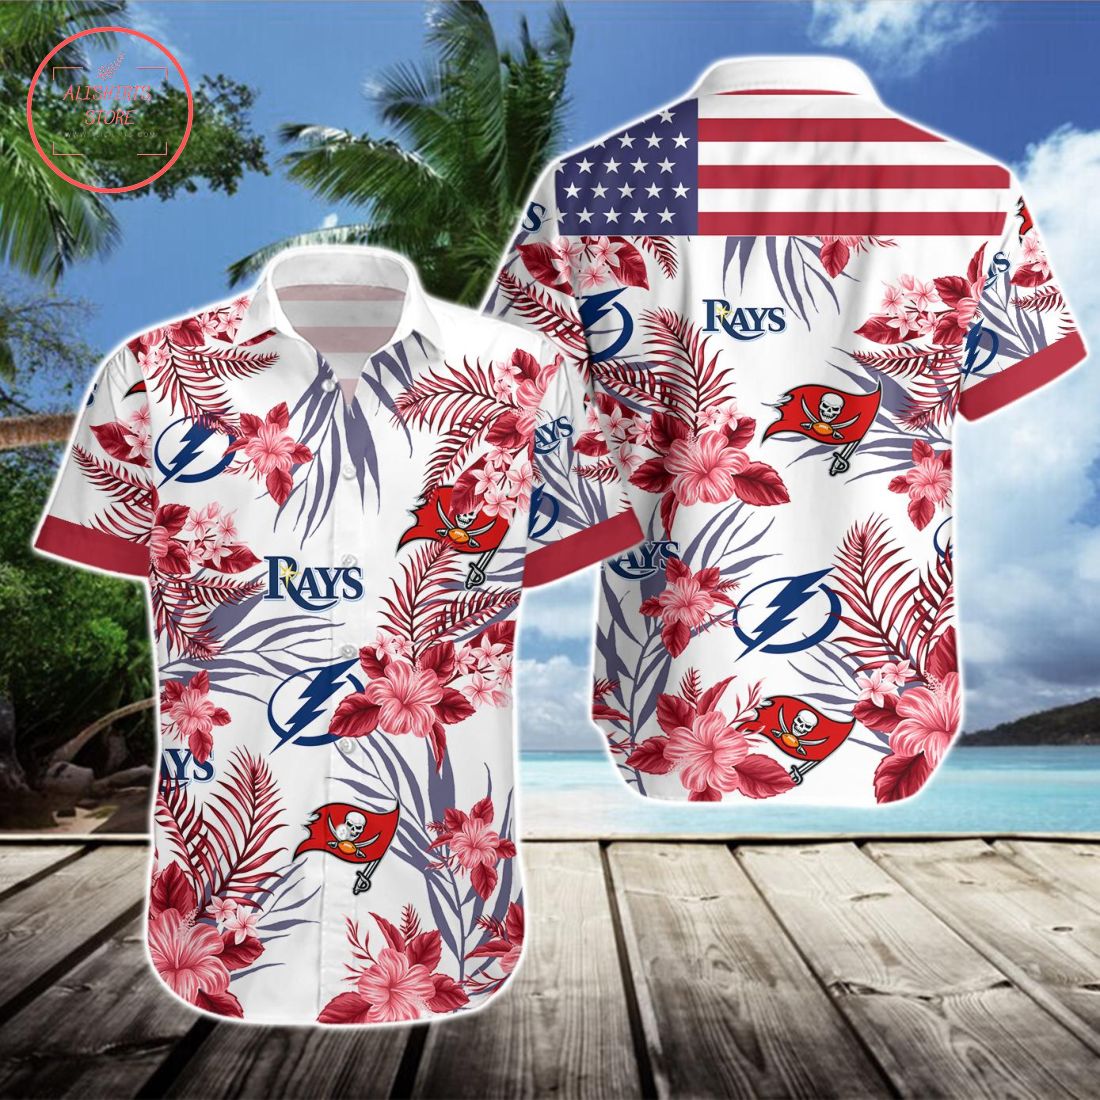 Tampa Bay Buccaneers Tampa Bay Lightning Tampa Bay Rays Hawaiian Shirt and Shorts